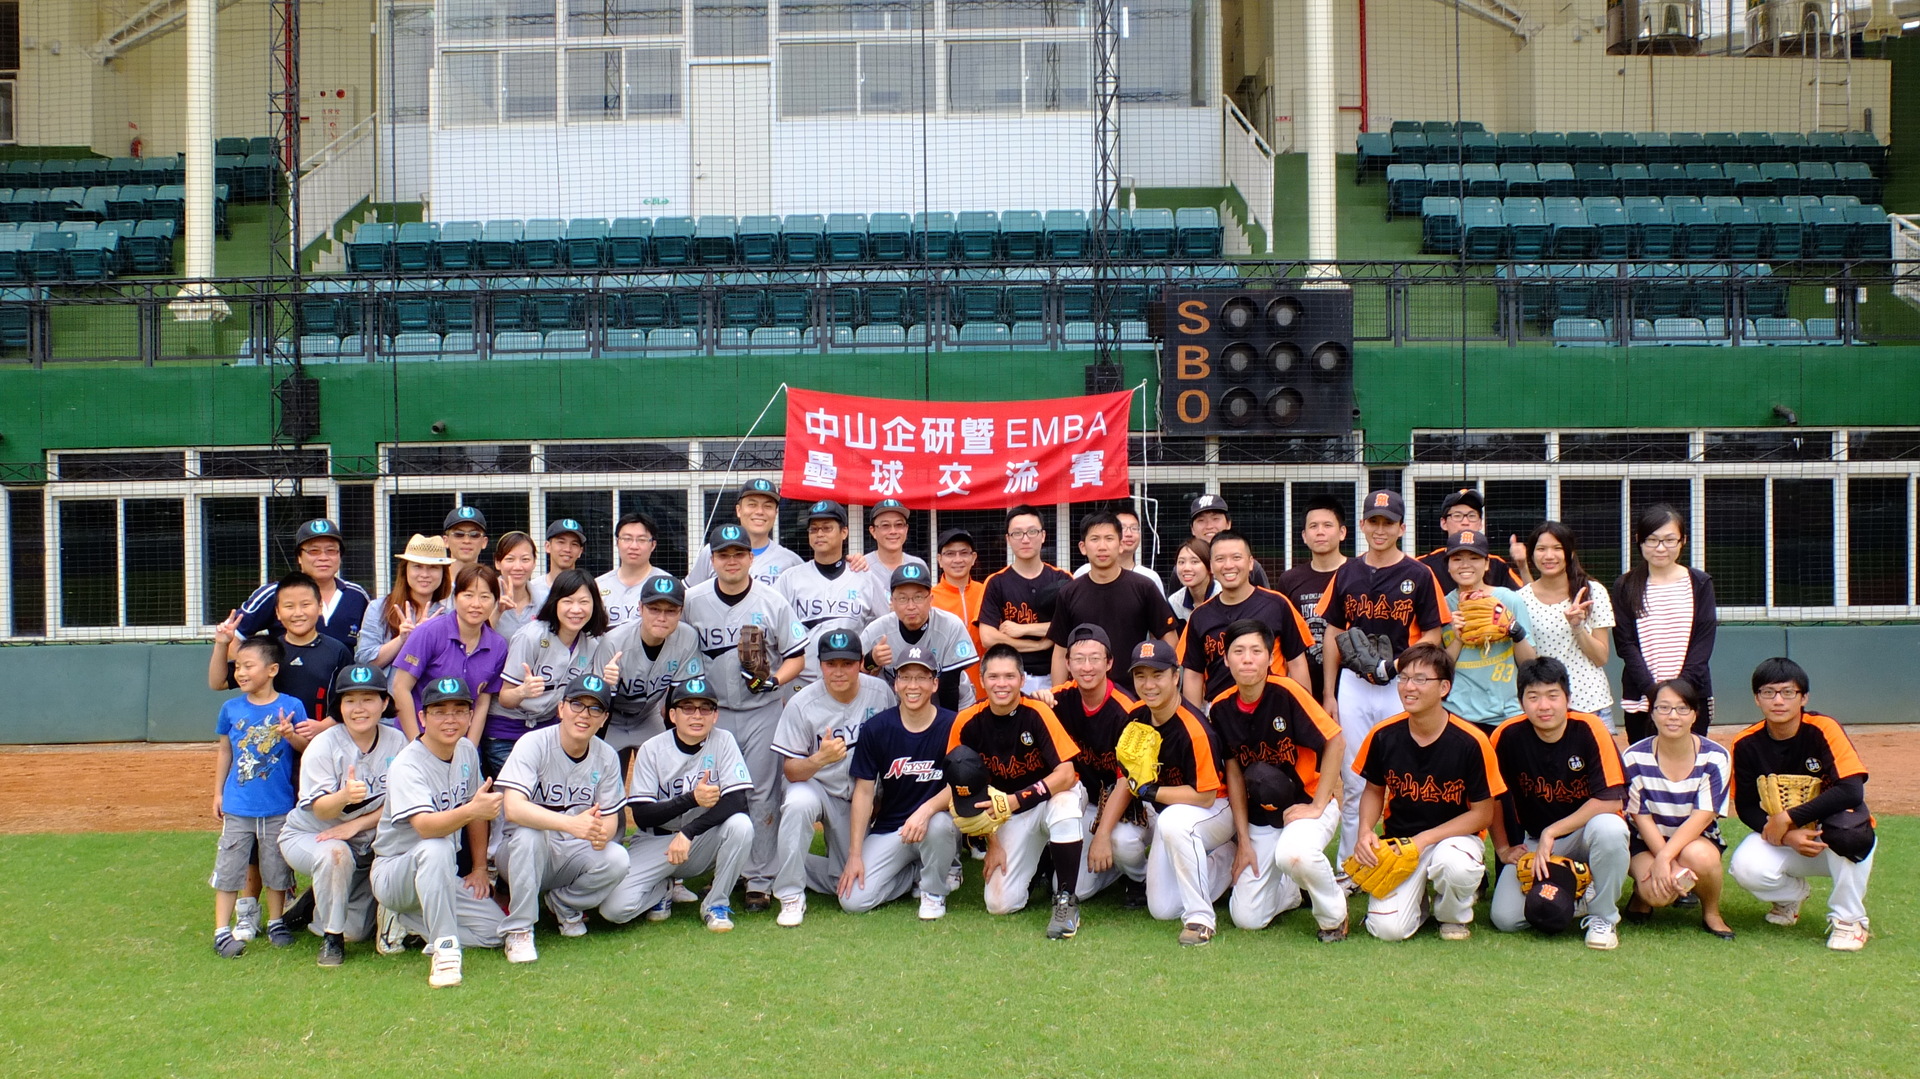 中山EMBA-15與企管所學生參與壘球競賽